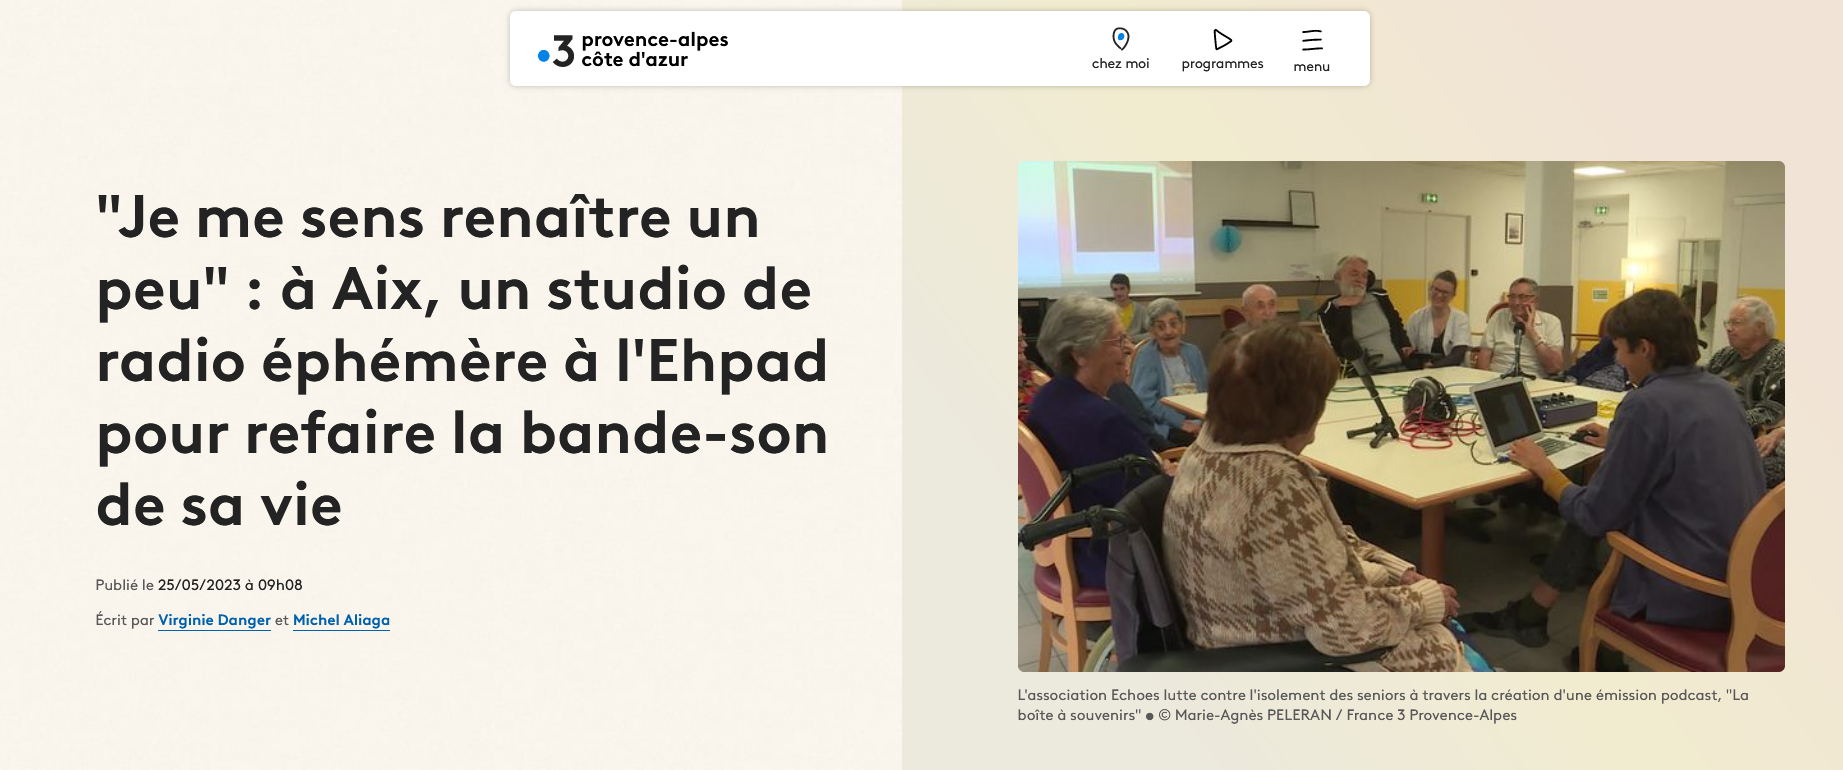 Capture d'écran d'un article sur le site France 3 PACA